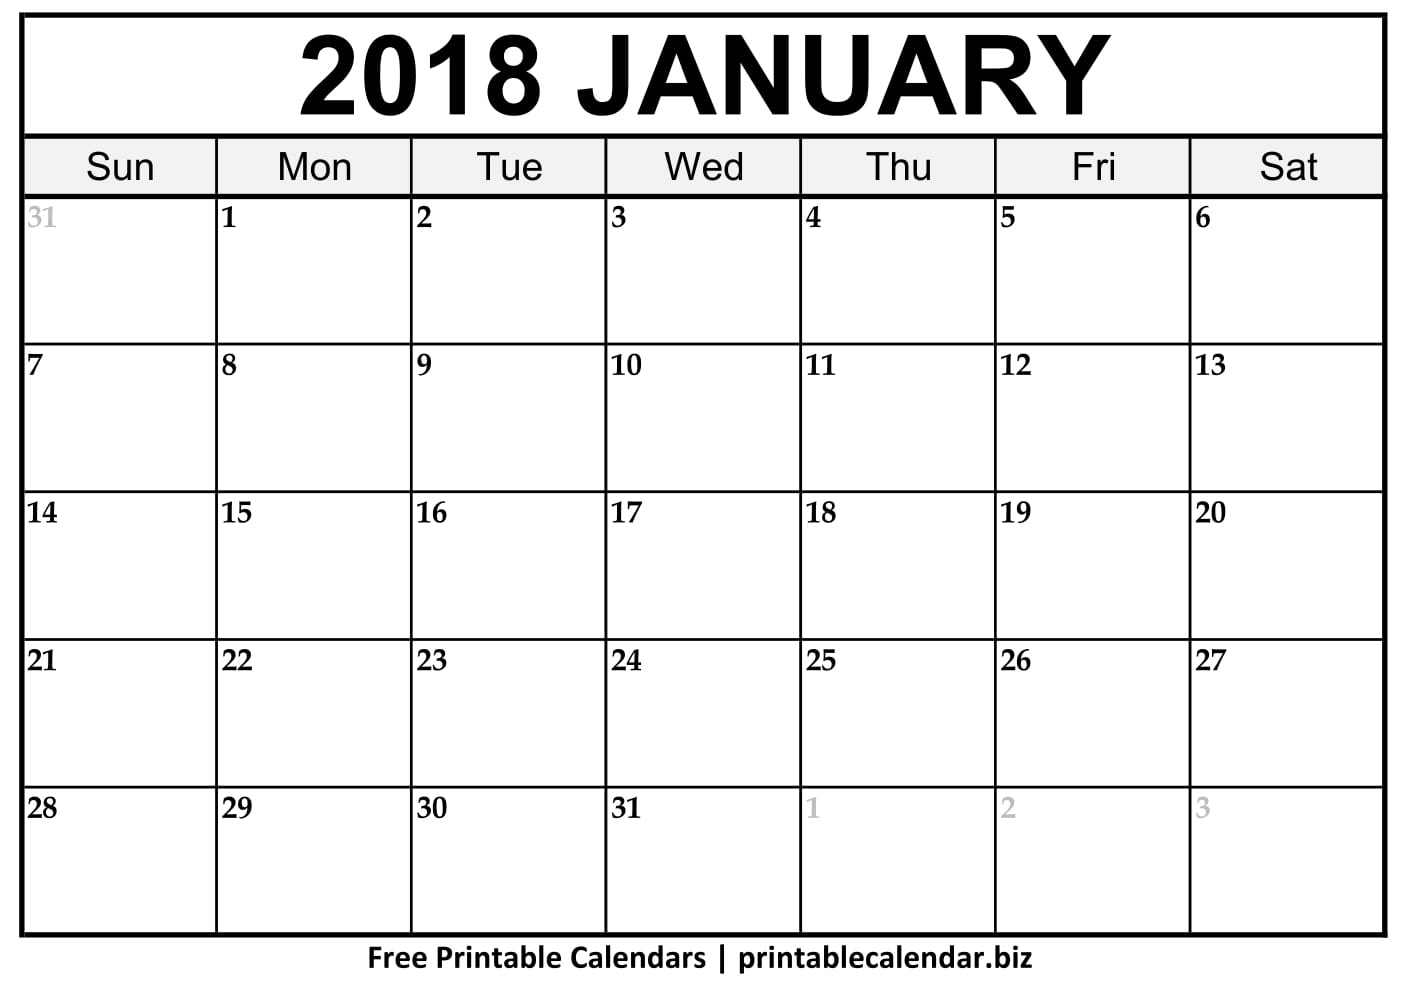 Depo Provera Calendar